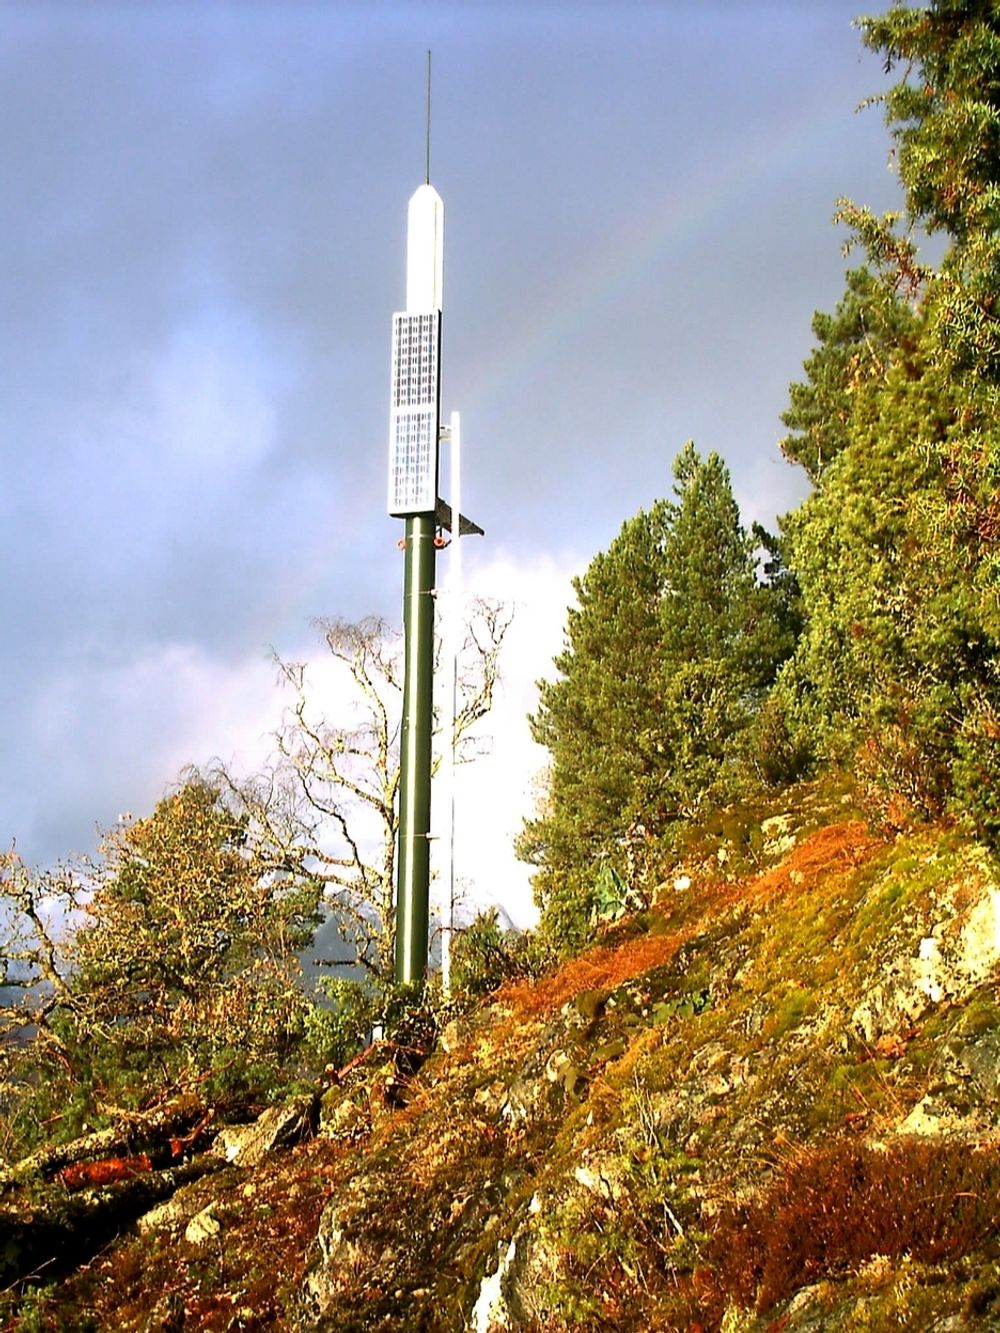 MED STØTTE: Ocas har hatt suksess med sin radarvarsling. Støtten fra Innovasjon Norge har hatt stor betydning.